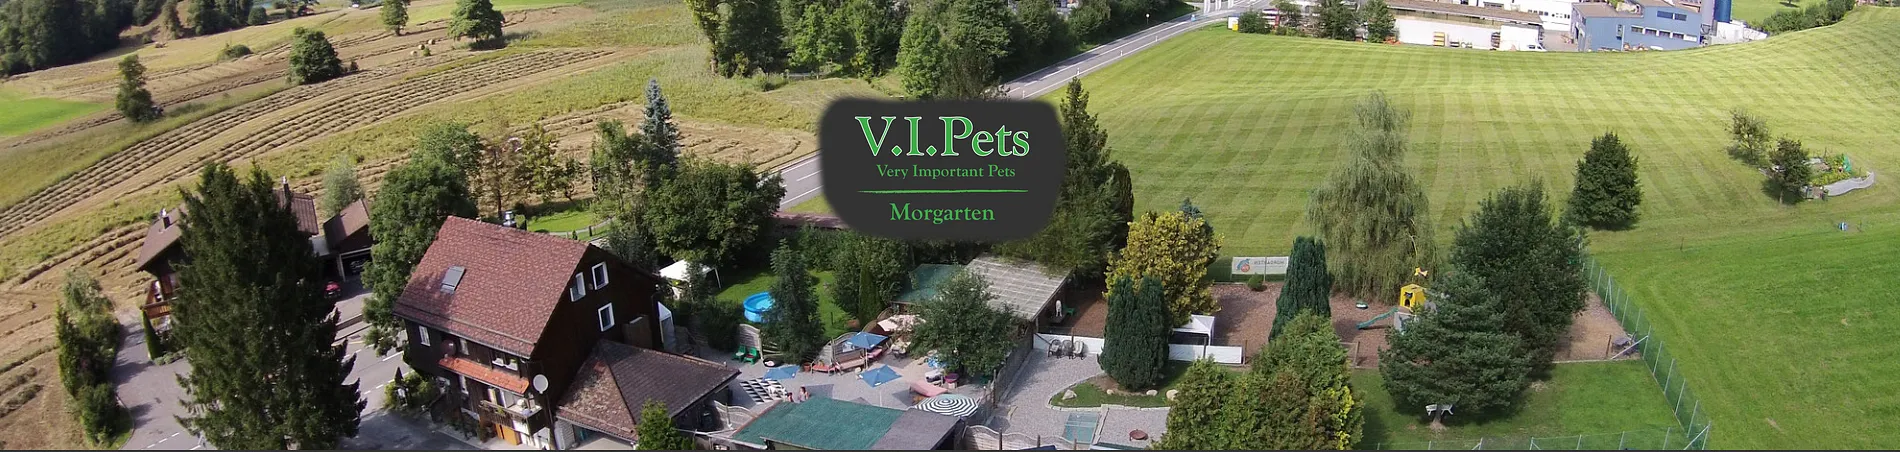 V.I.Pets Morgarten